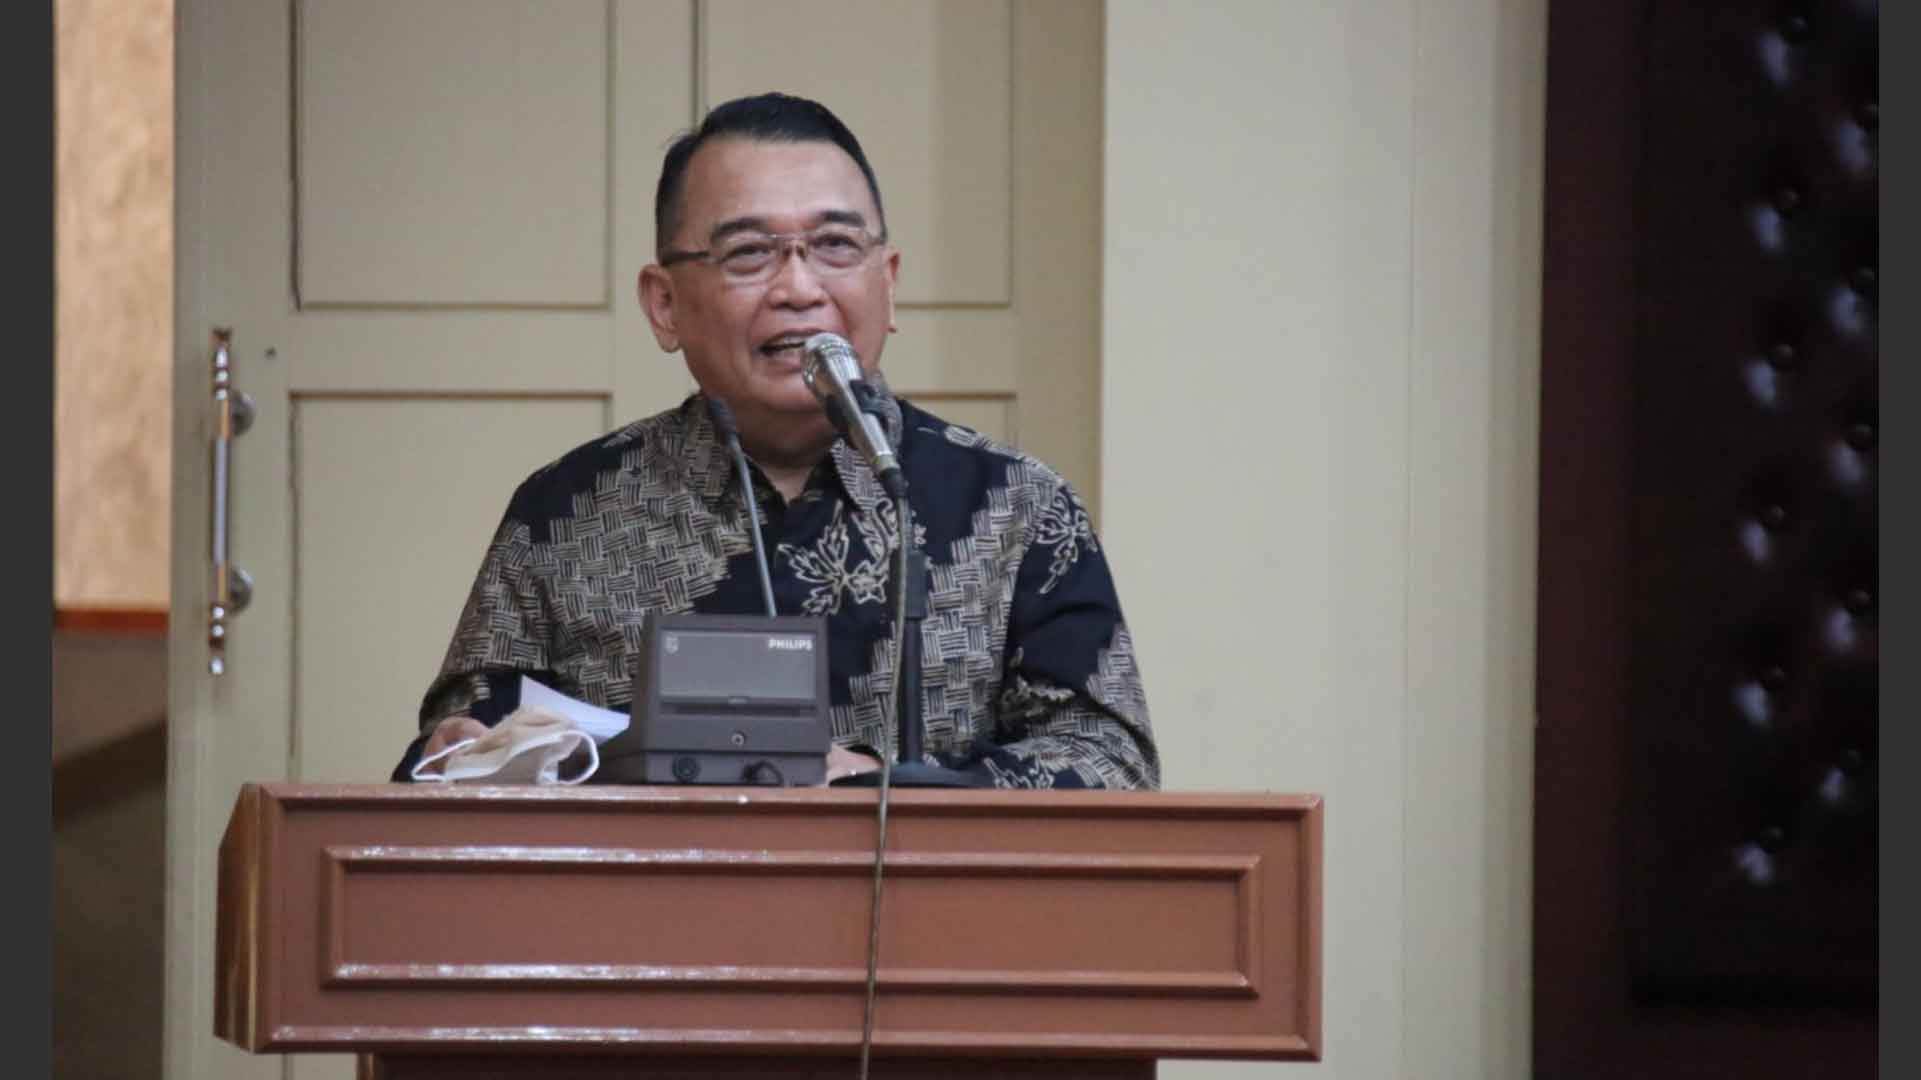 KY Gandeng Pemerintah Daerah Lampung Sosialisasikan Peradilan Bersih